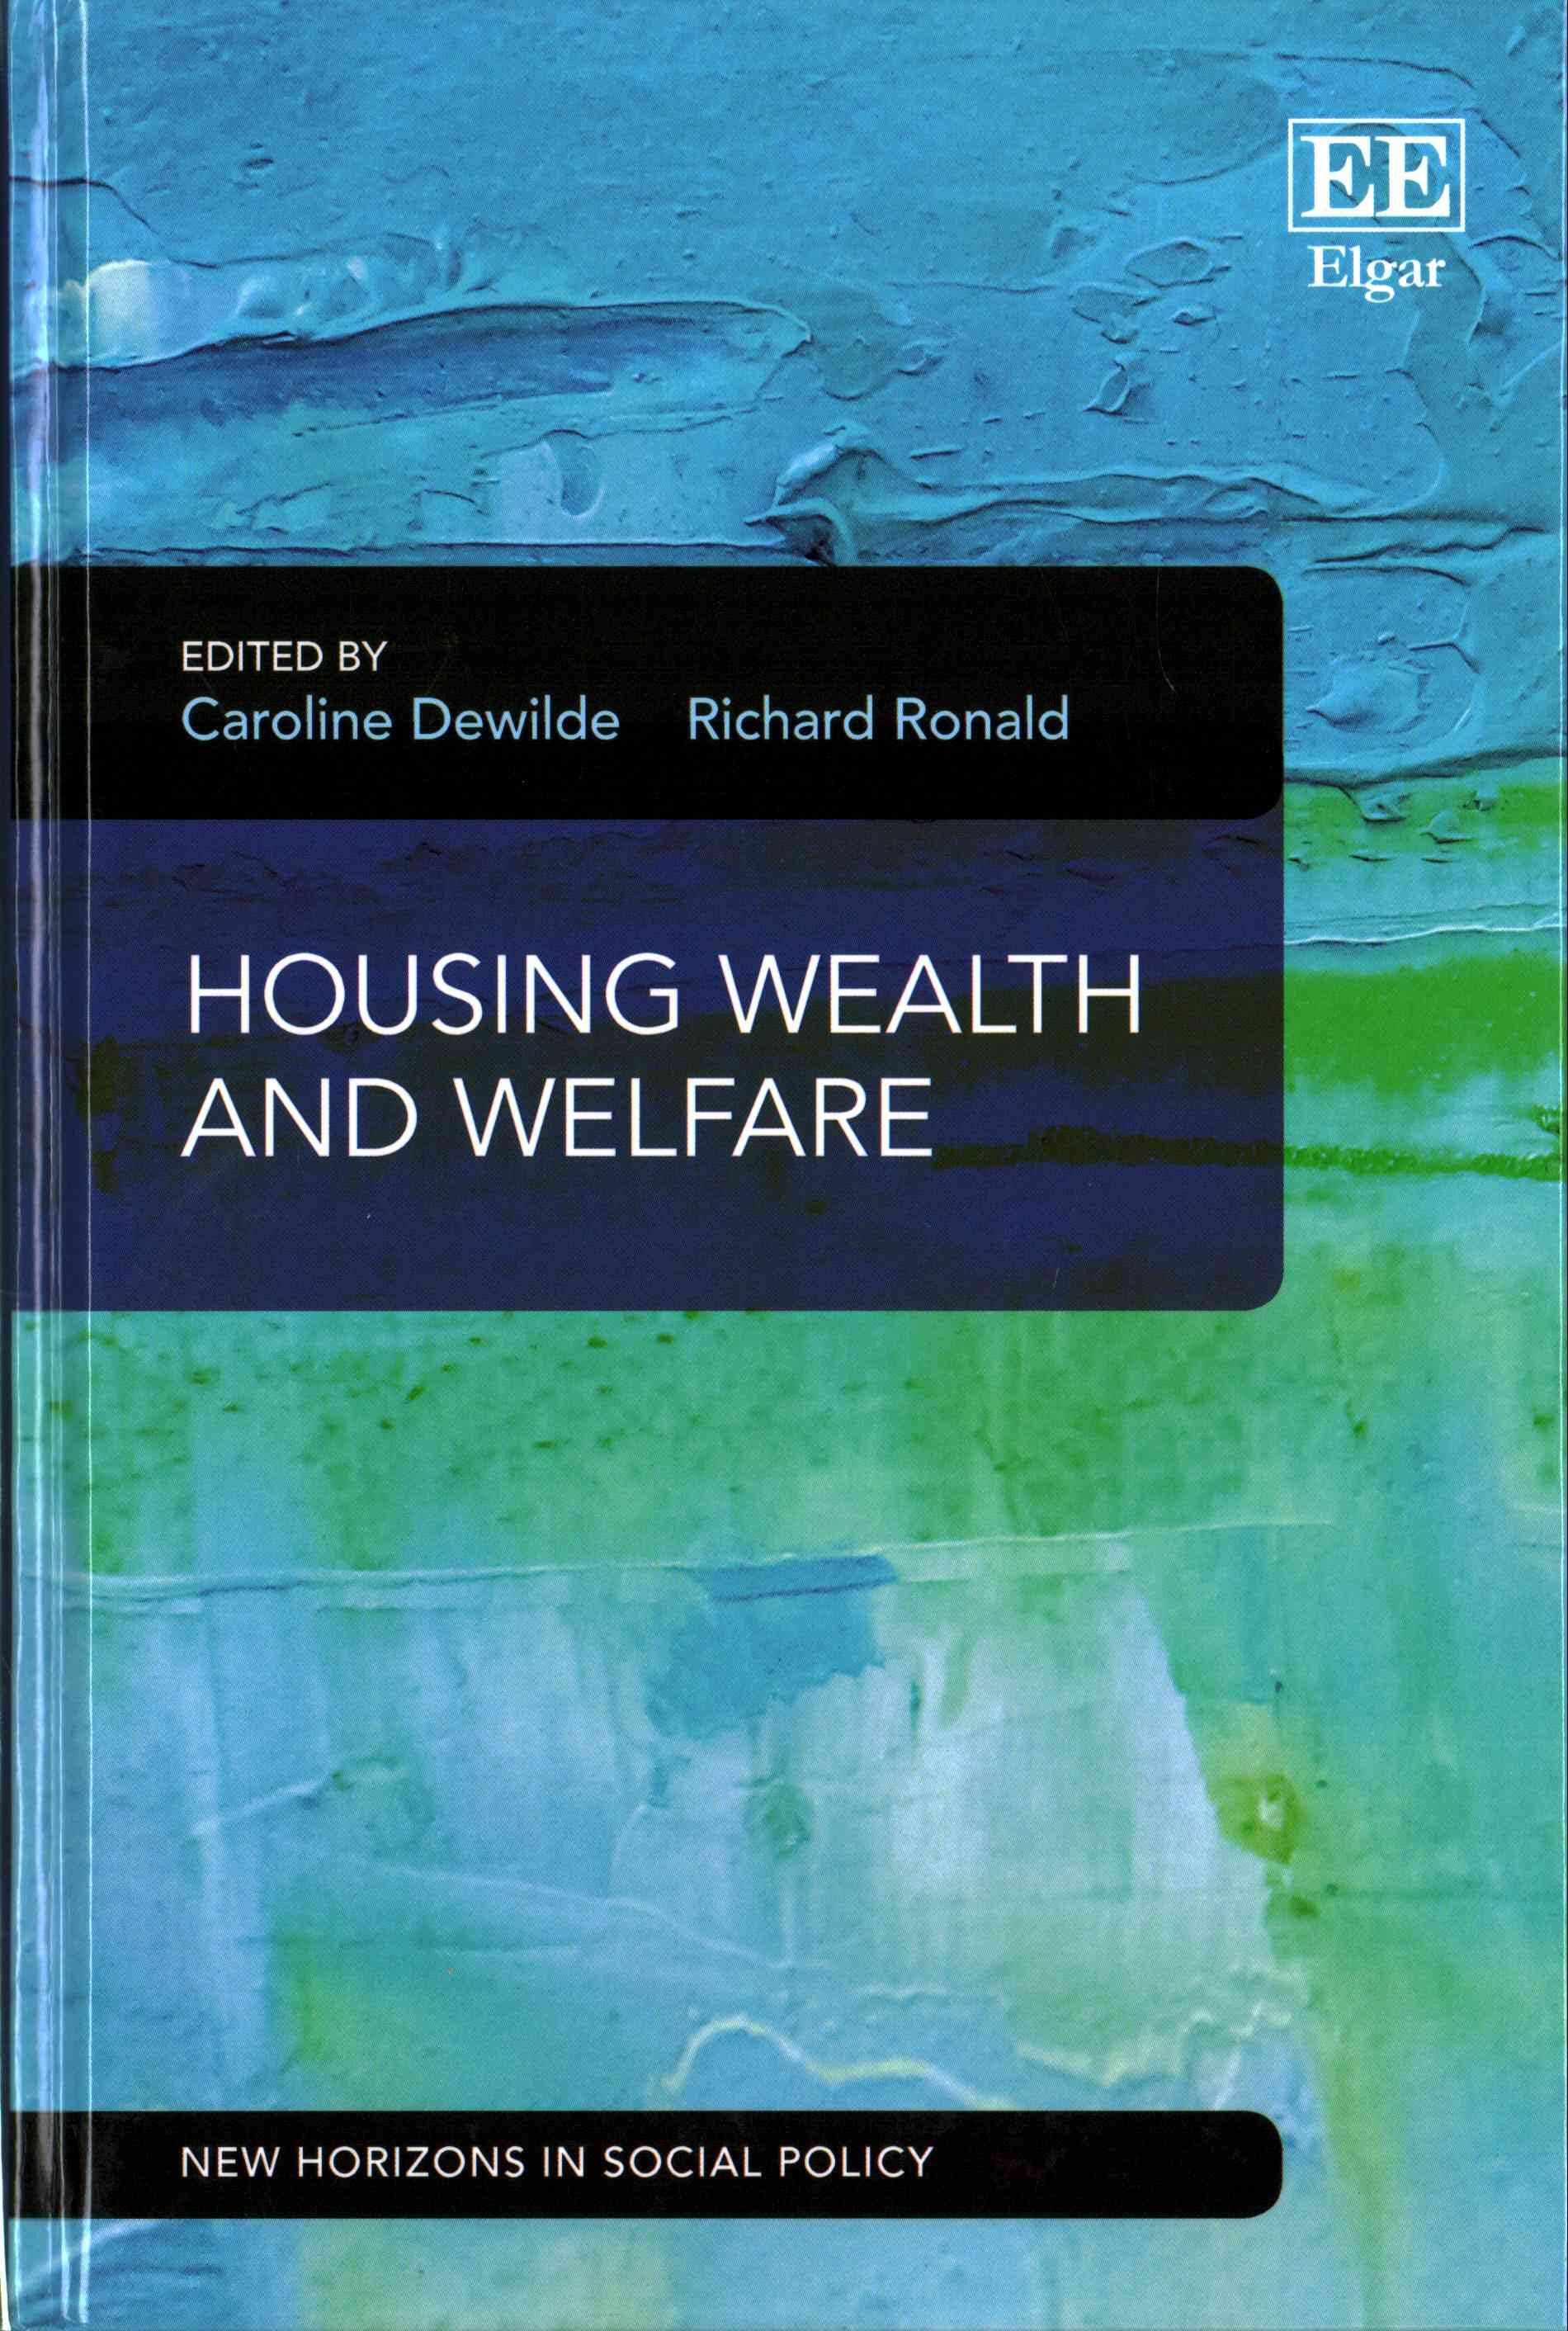 Housing, wealth and welfare 책표지